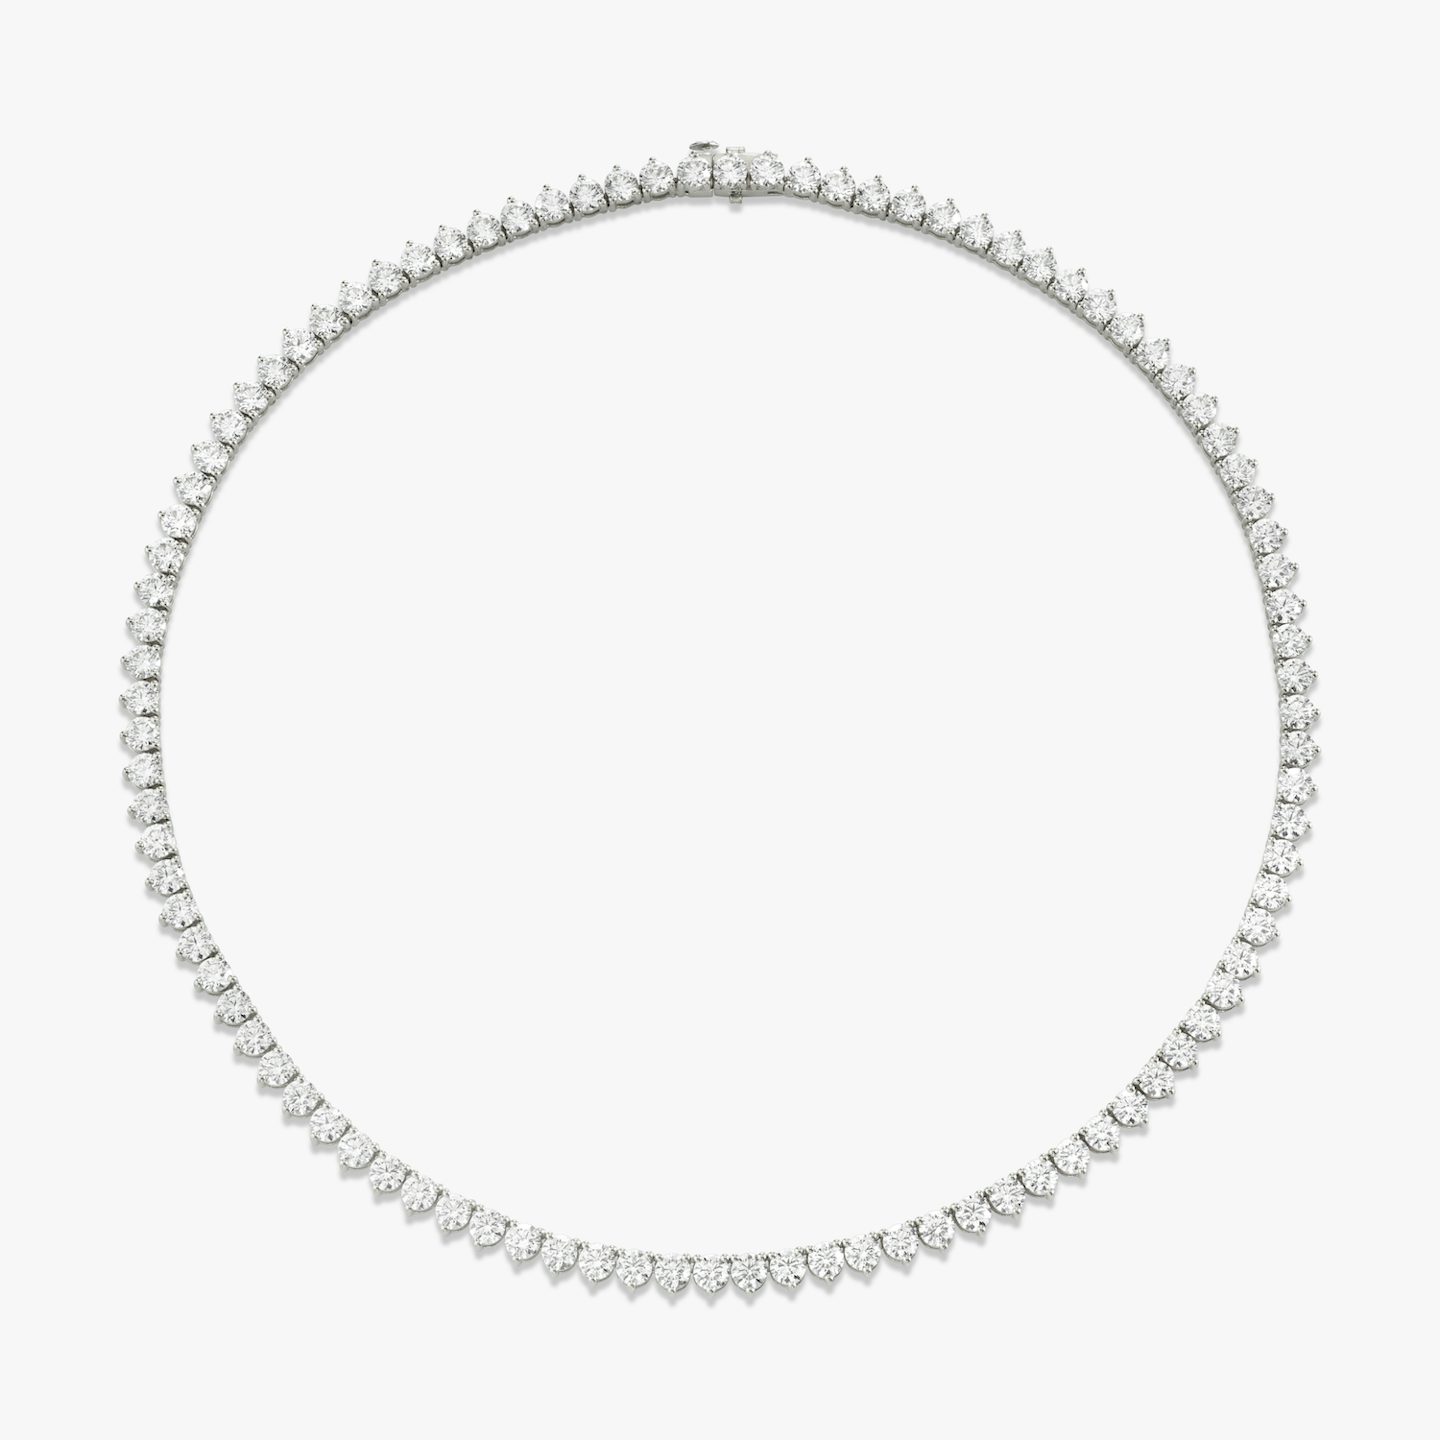 Collar de Tenis | Brillante | 14k | Oro blanco de 18 quilates | Tamaño de los diamantes: Large | Longitud de la cadena: 16